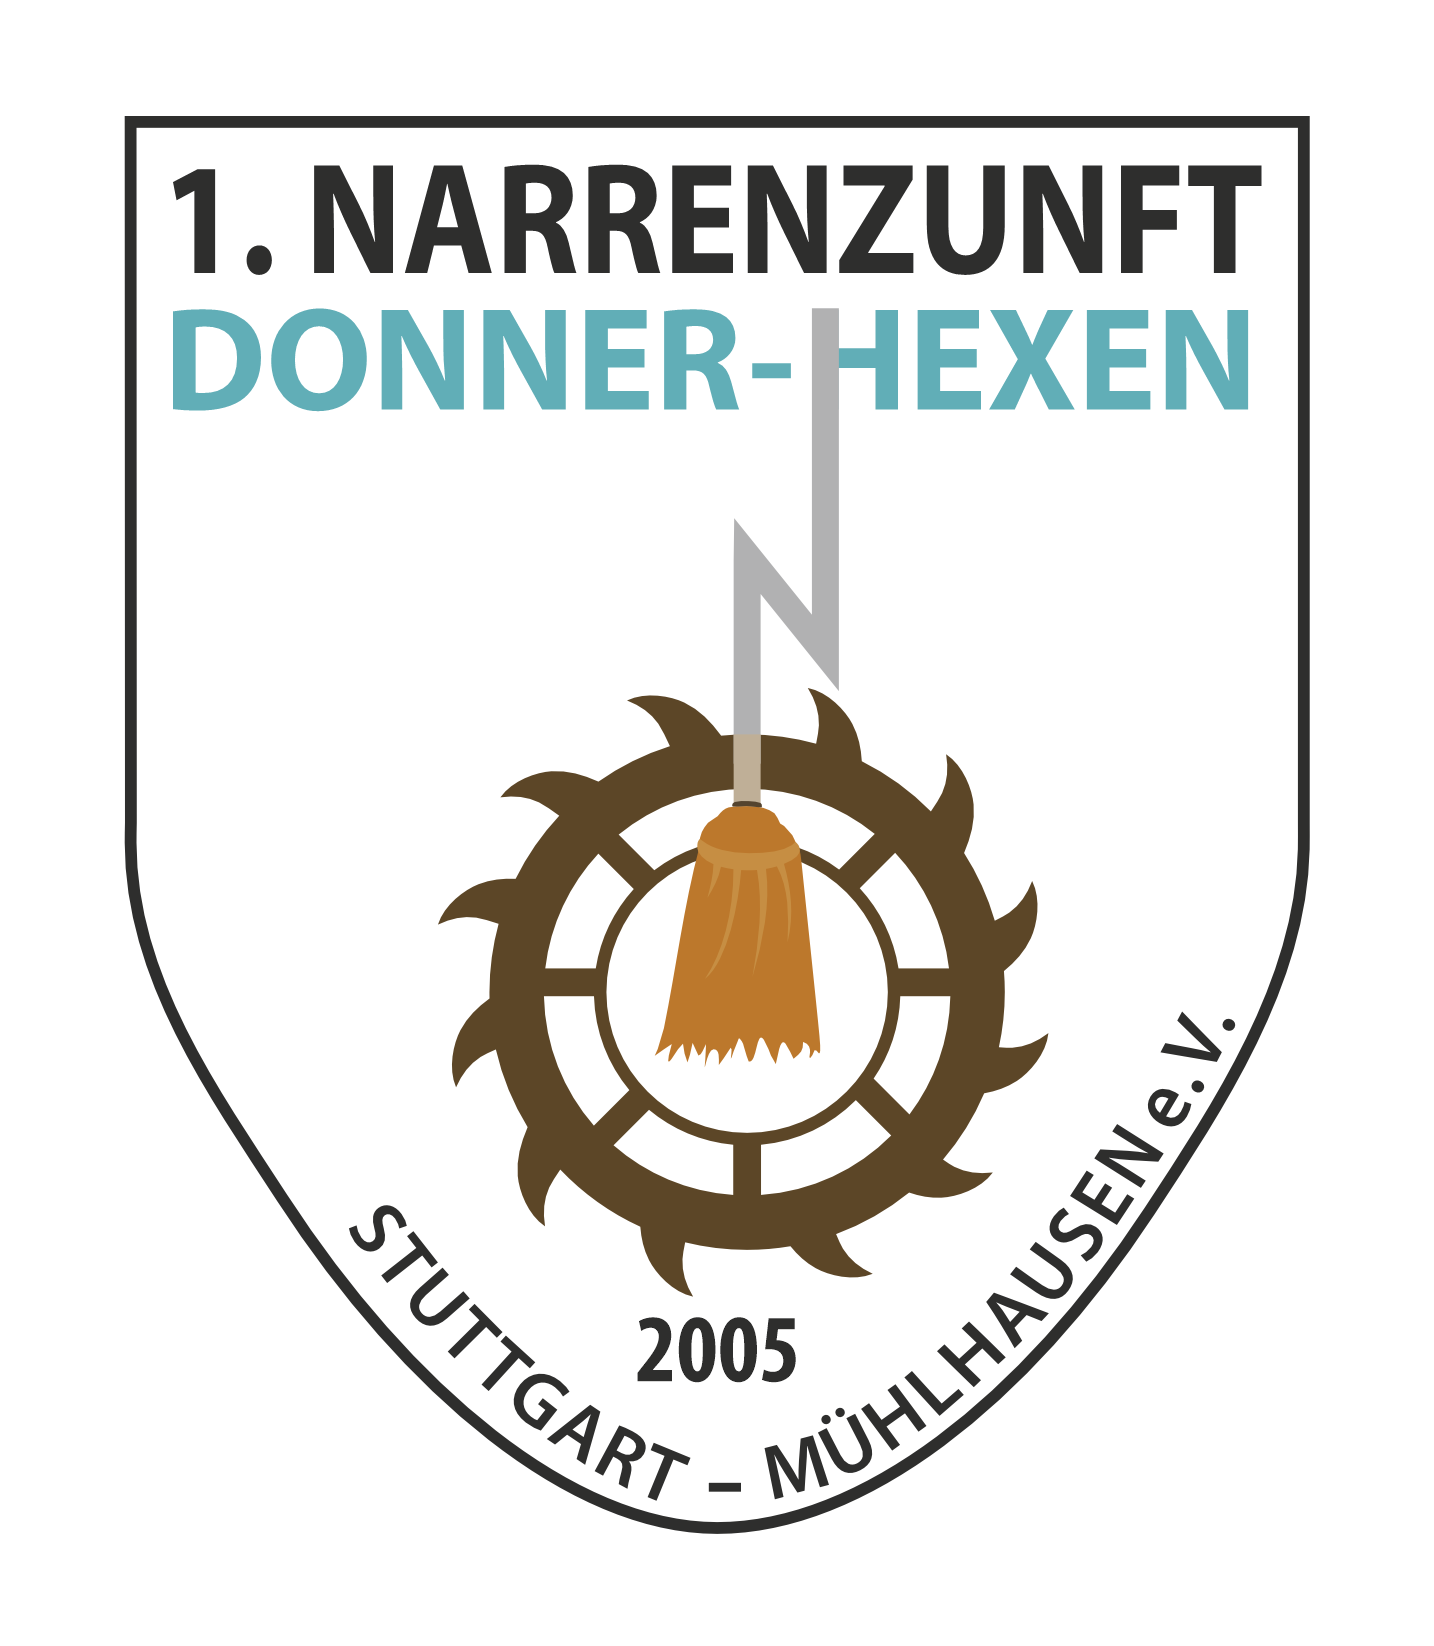 1.Narrenzunft Donner-Hexen 2005 Stuttgart-Mühlhausen e.V.